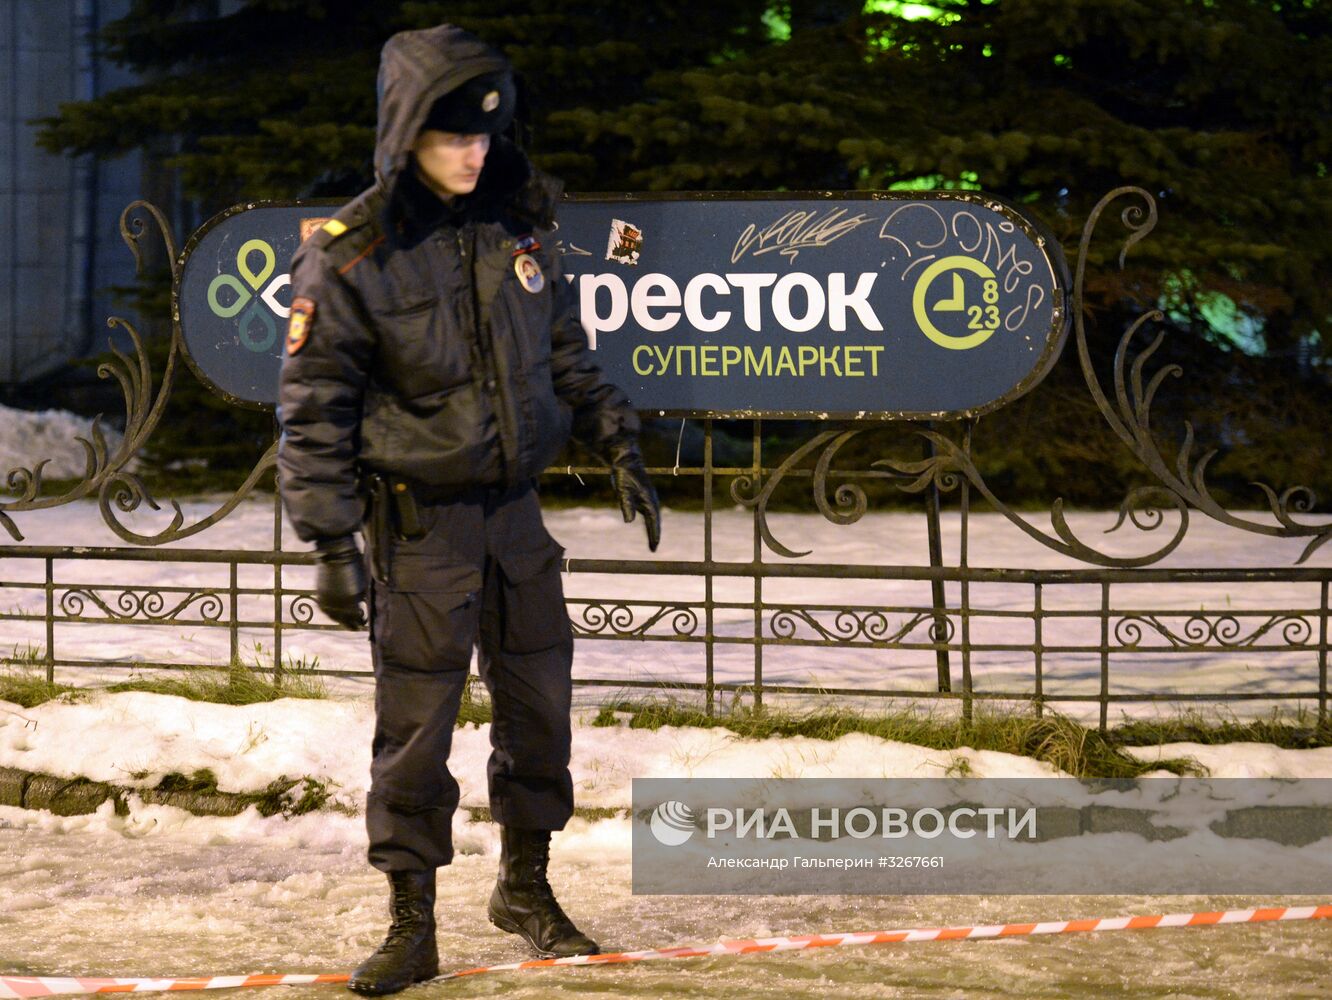 Взрыв в магазине "Перекресток" в Санкт-Петербурге